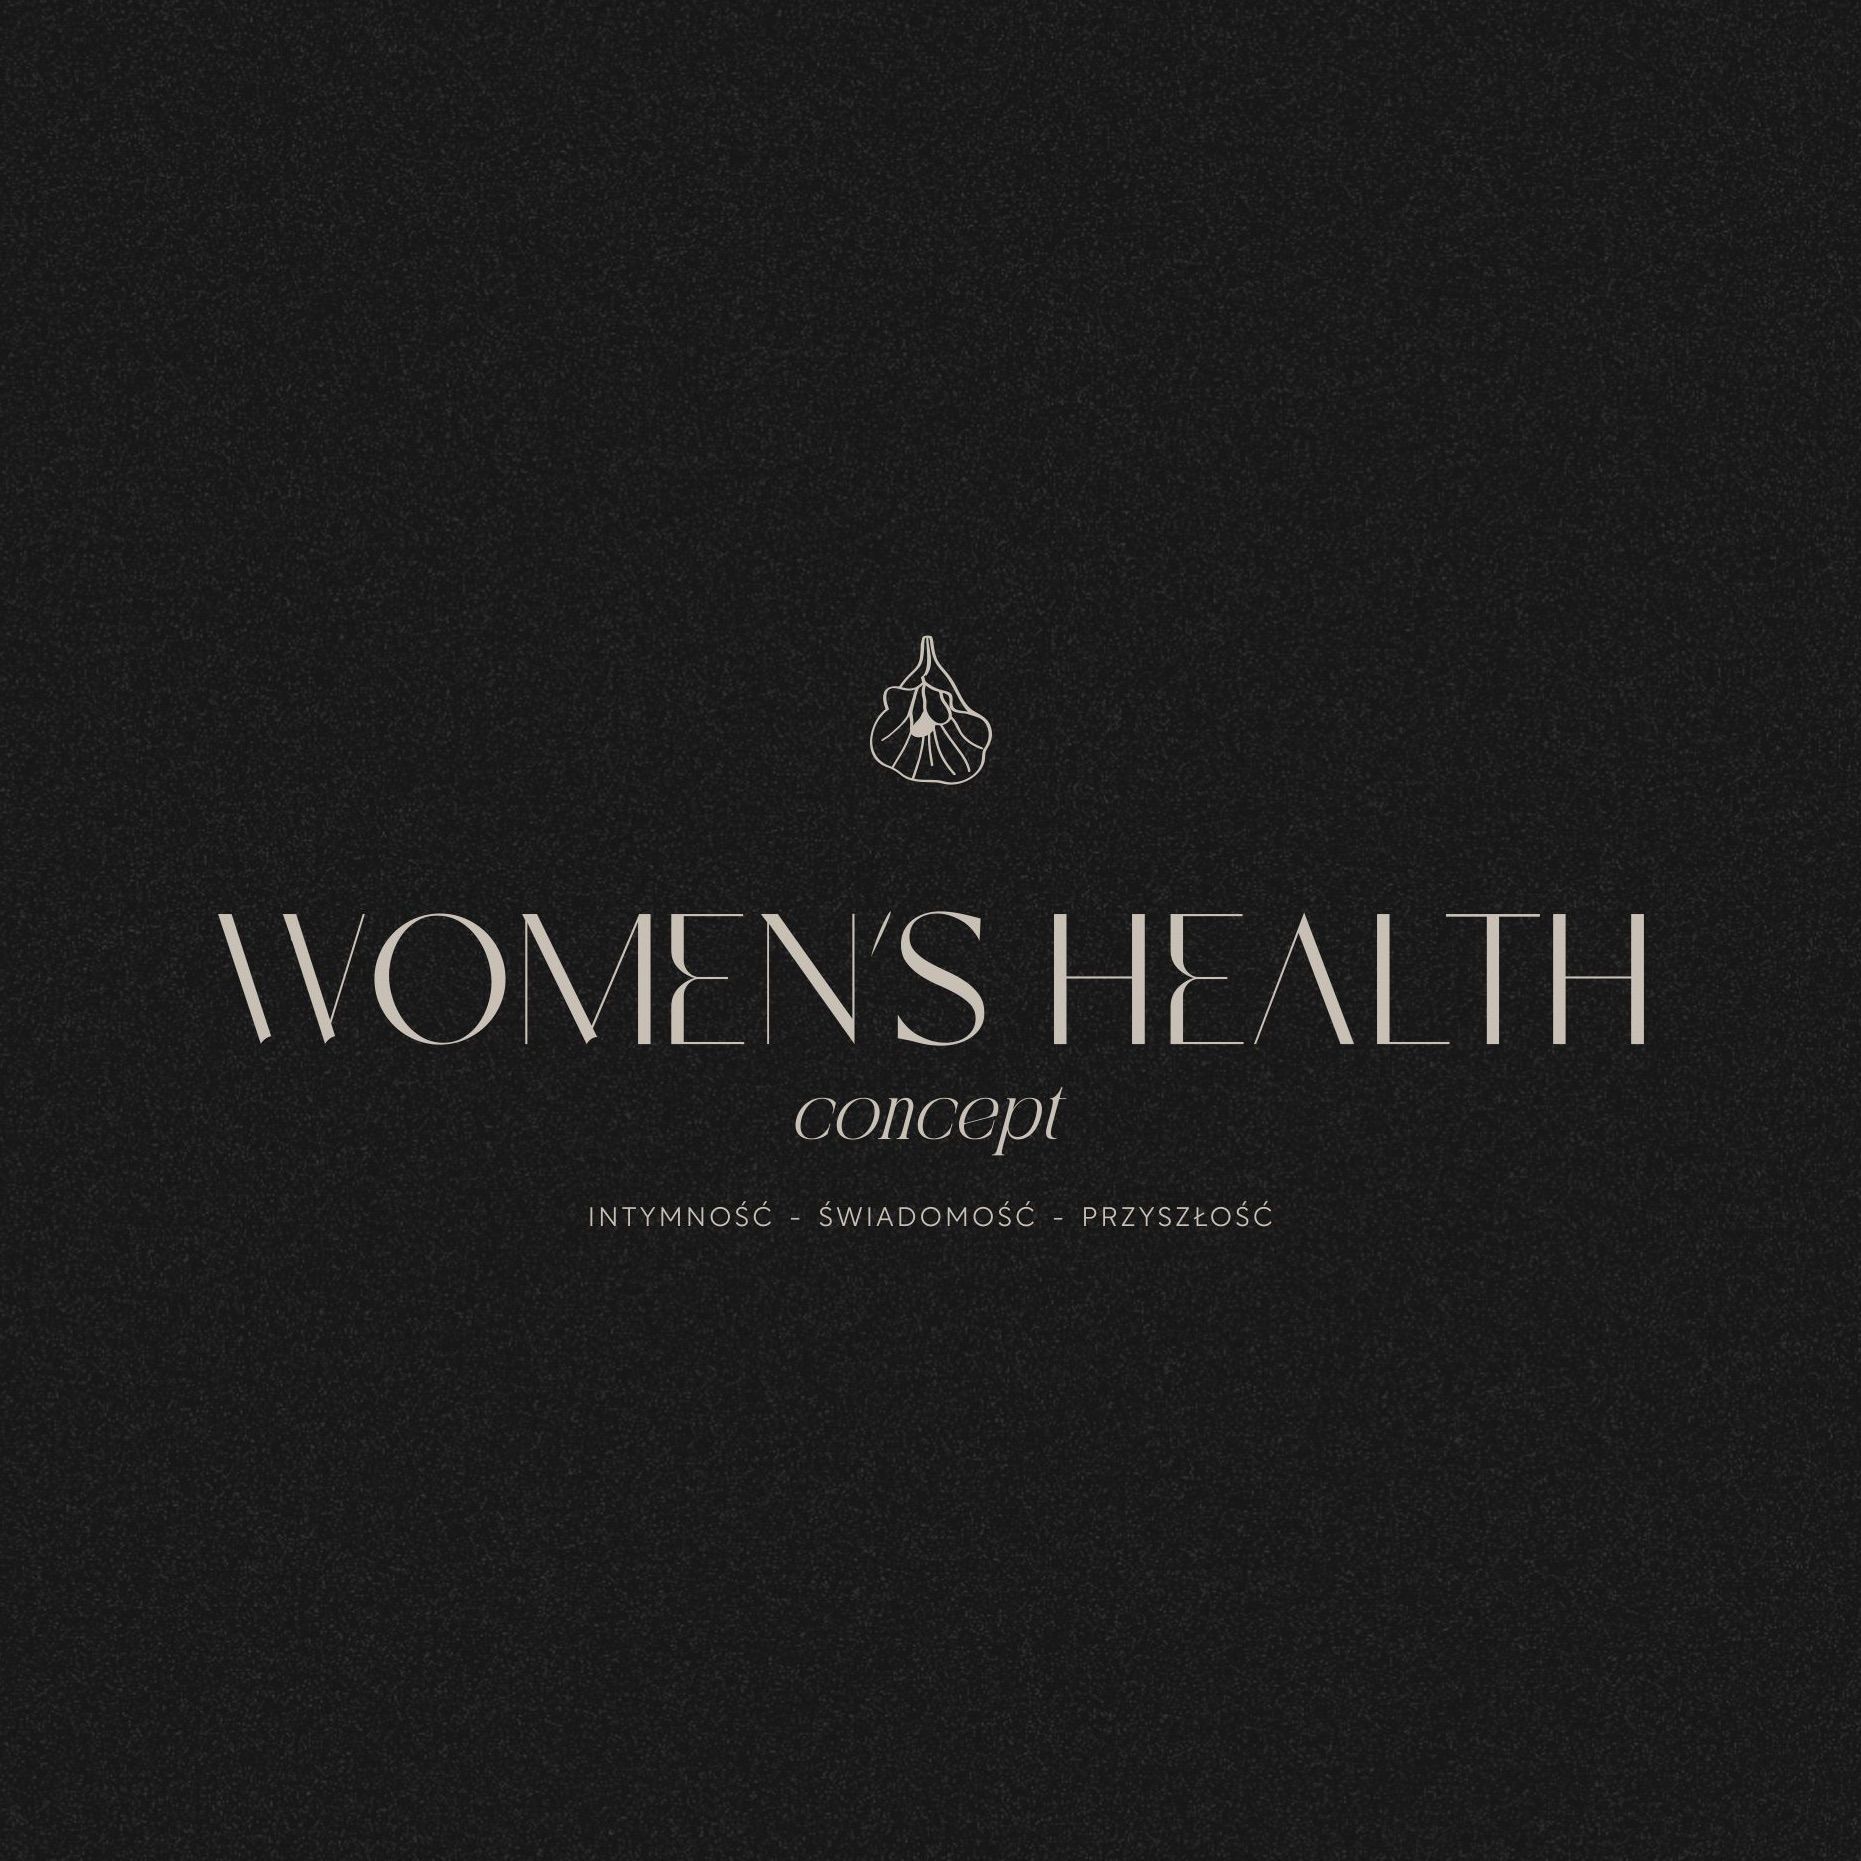 Women's Health Concept, Postępu 12B, U1, 02-676, Warszawa, Mokotów